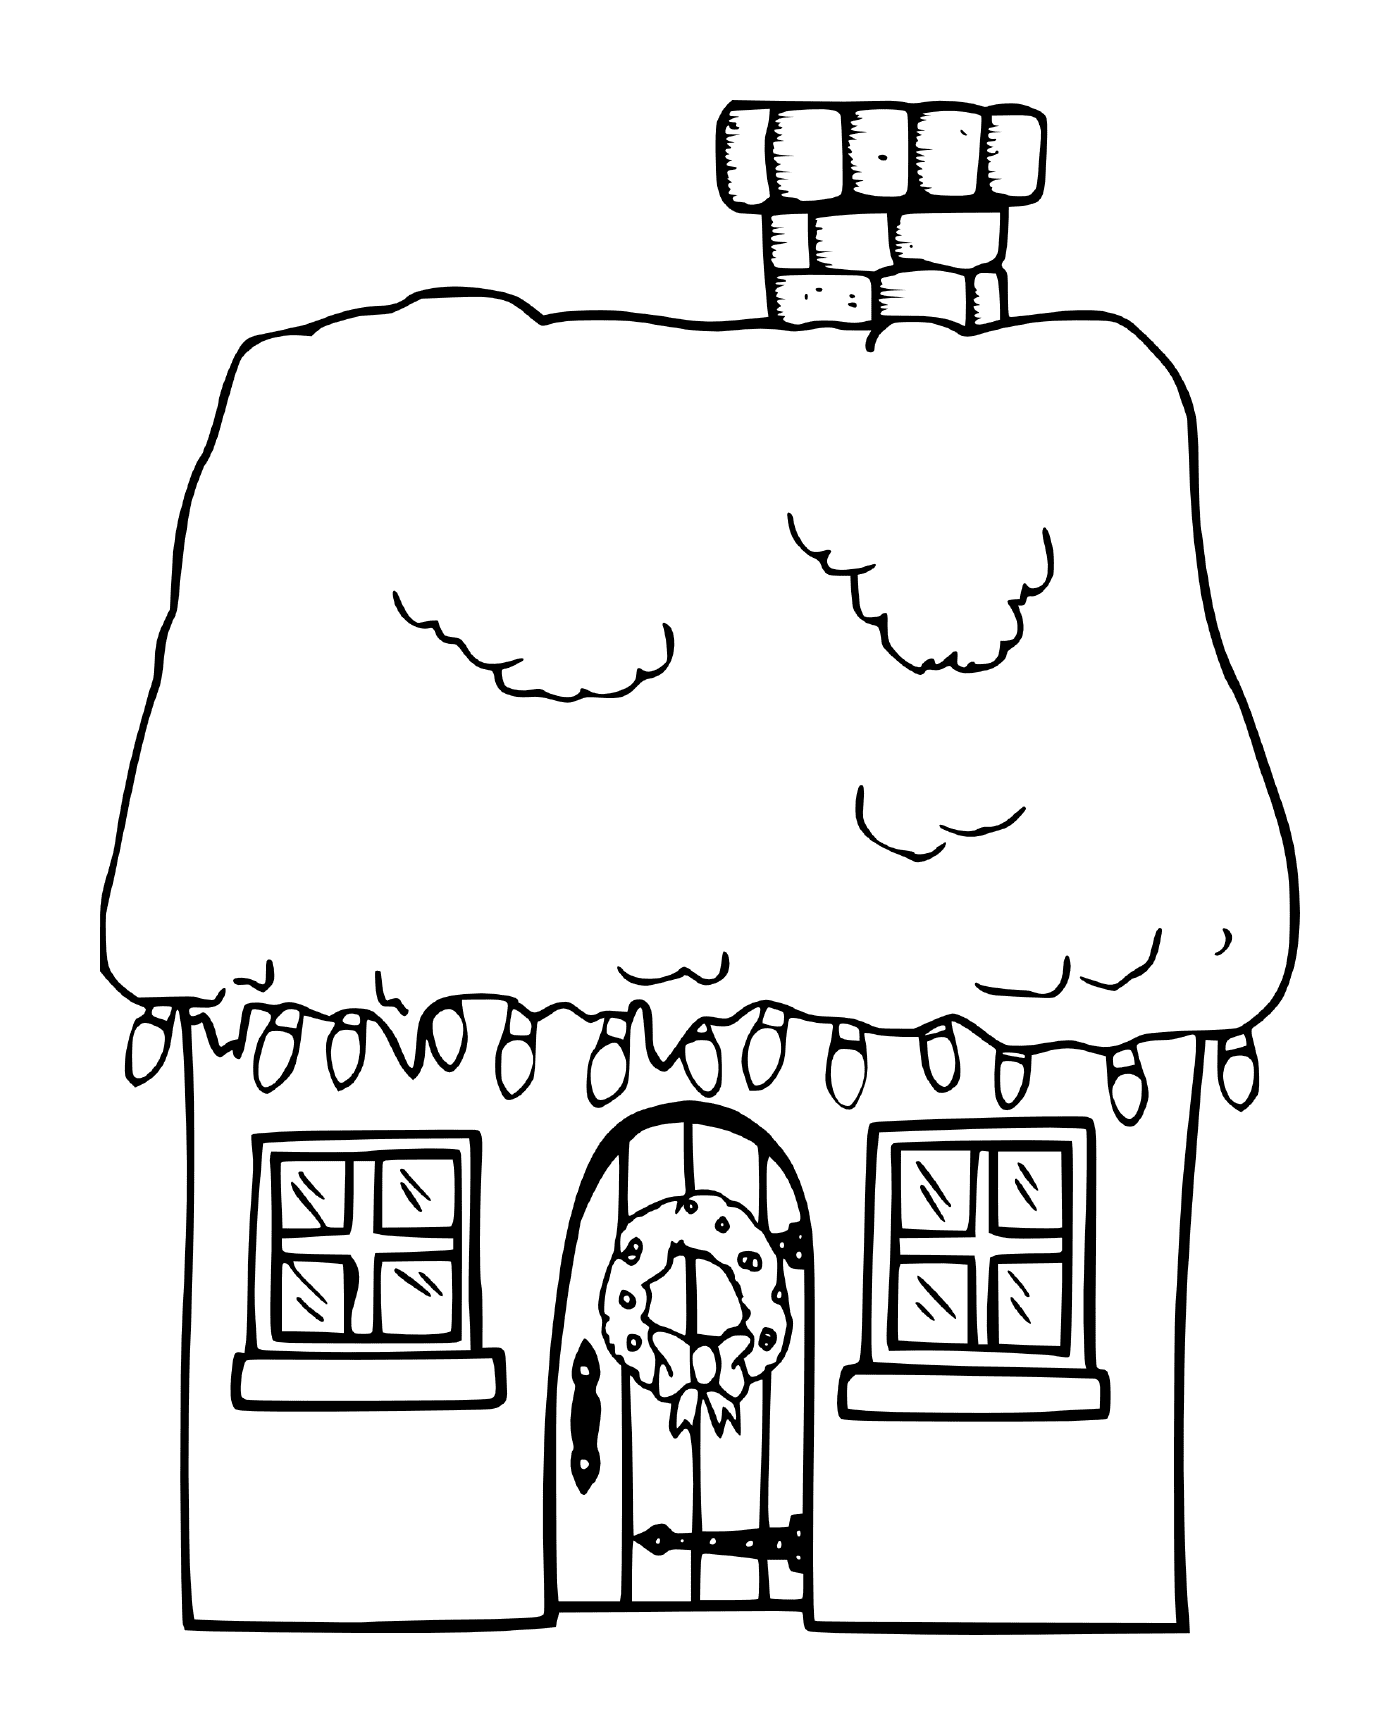  温暖的雪雪雪 圣诞别墅 